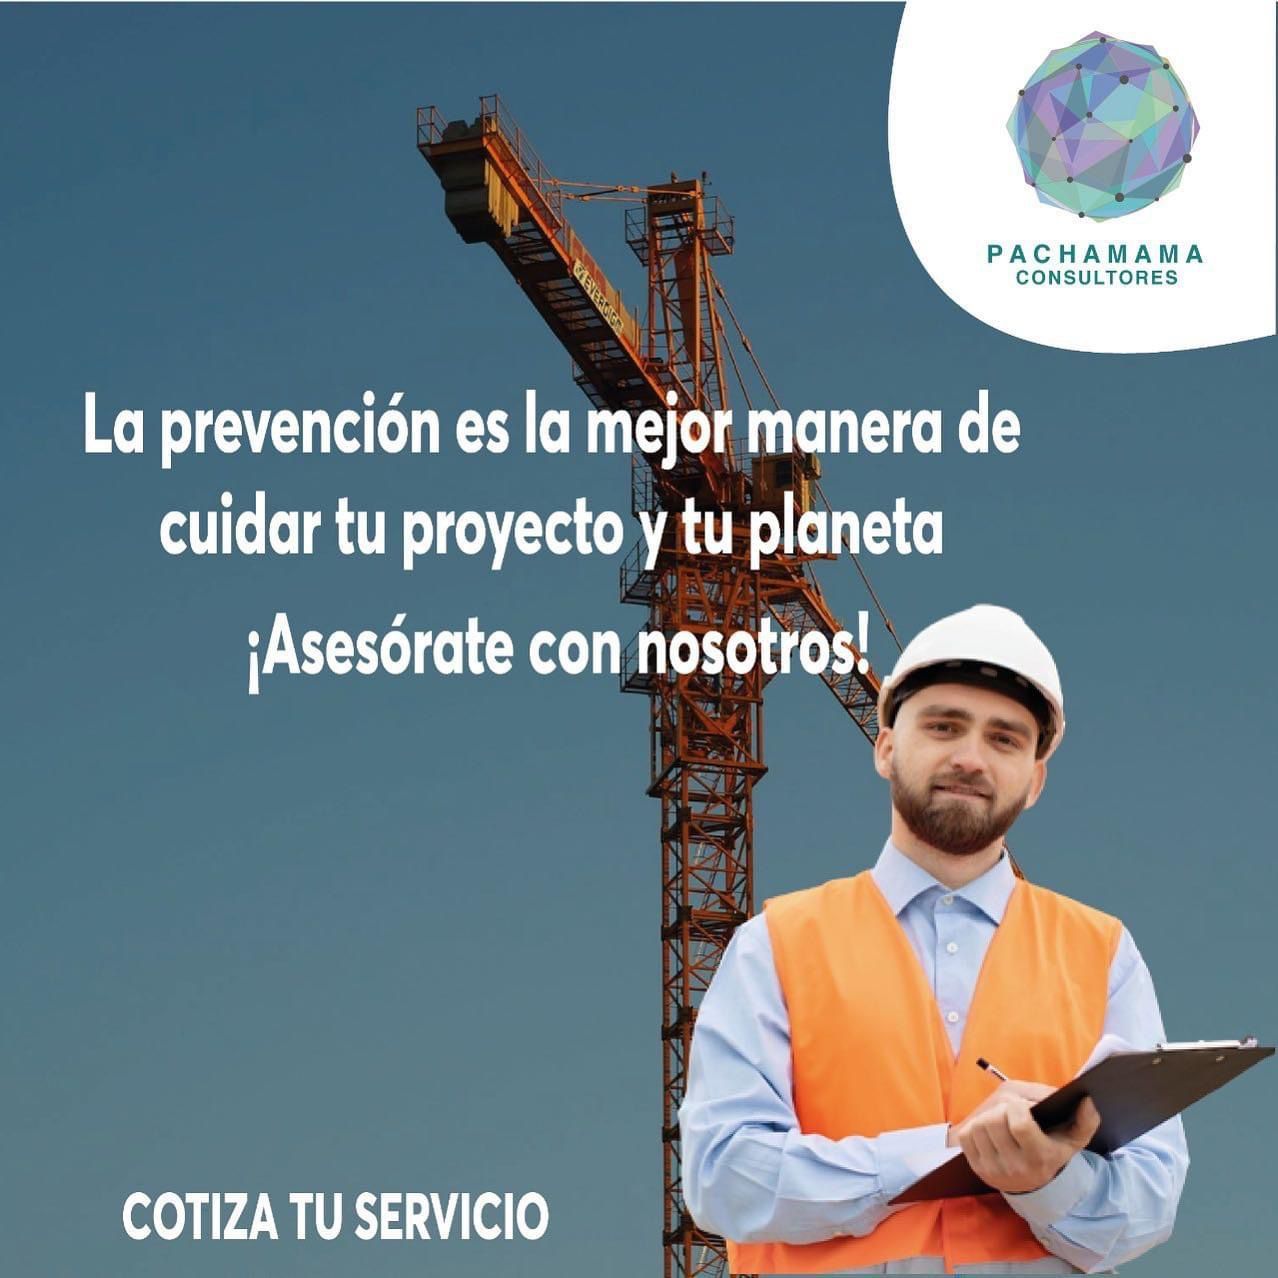 seguridad-e-higiene-laboral seguridad-industrial proyectos-productivos cedulas-de-operacion impacto-ambiental